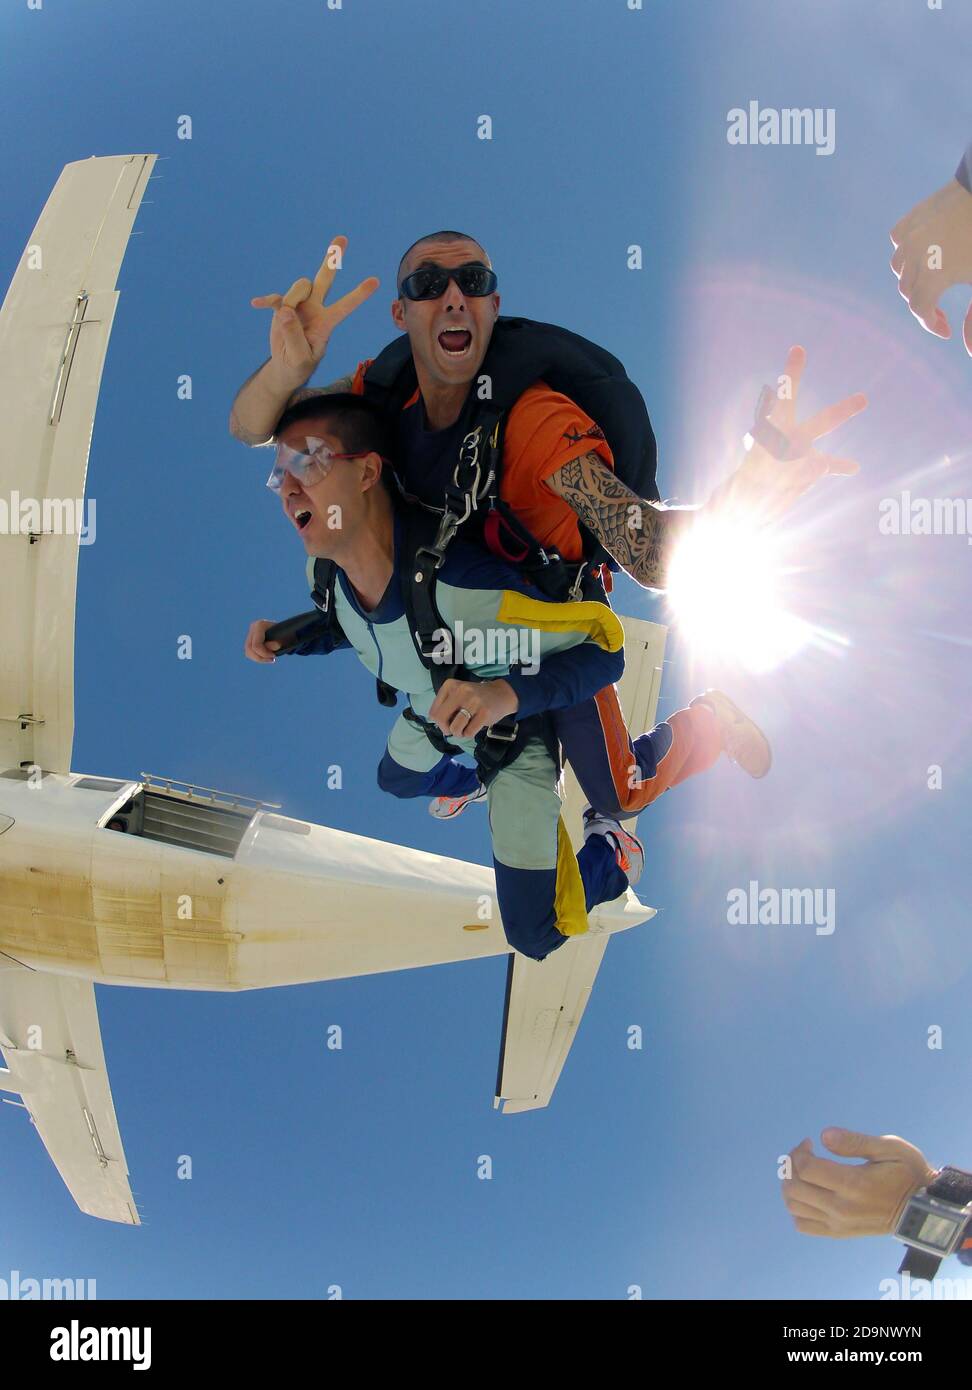 Skydive tandem due amici saltano fuori dall'aereo Foto Stock